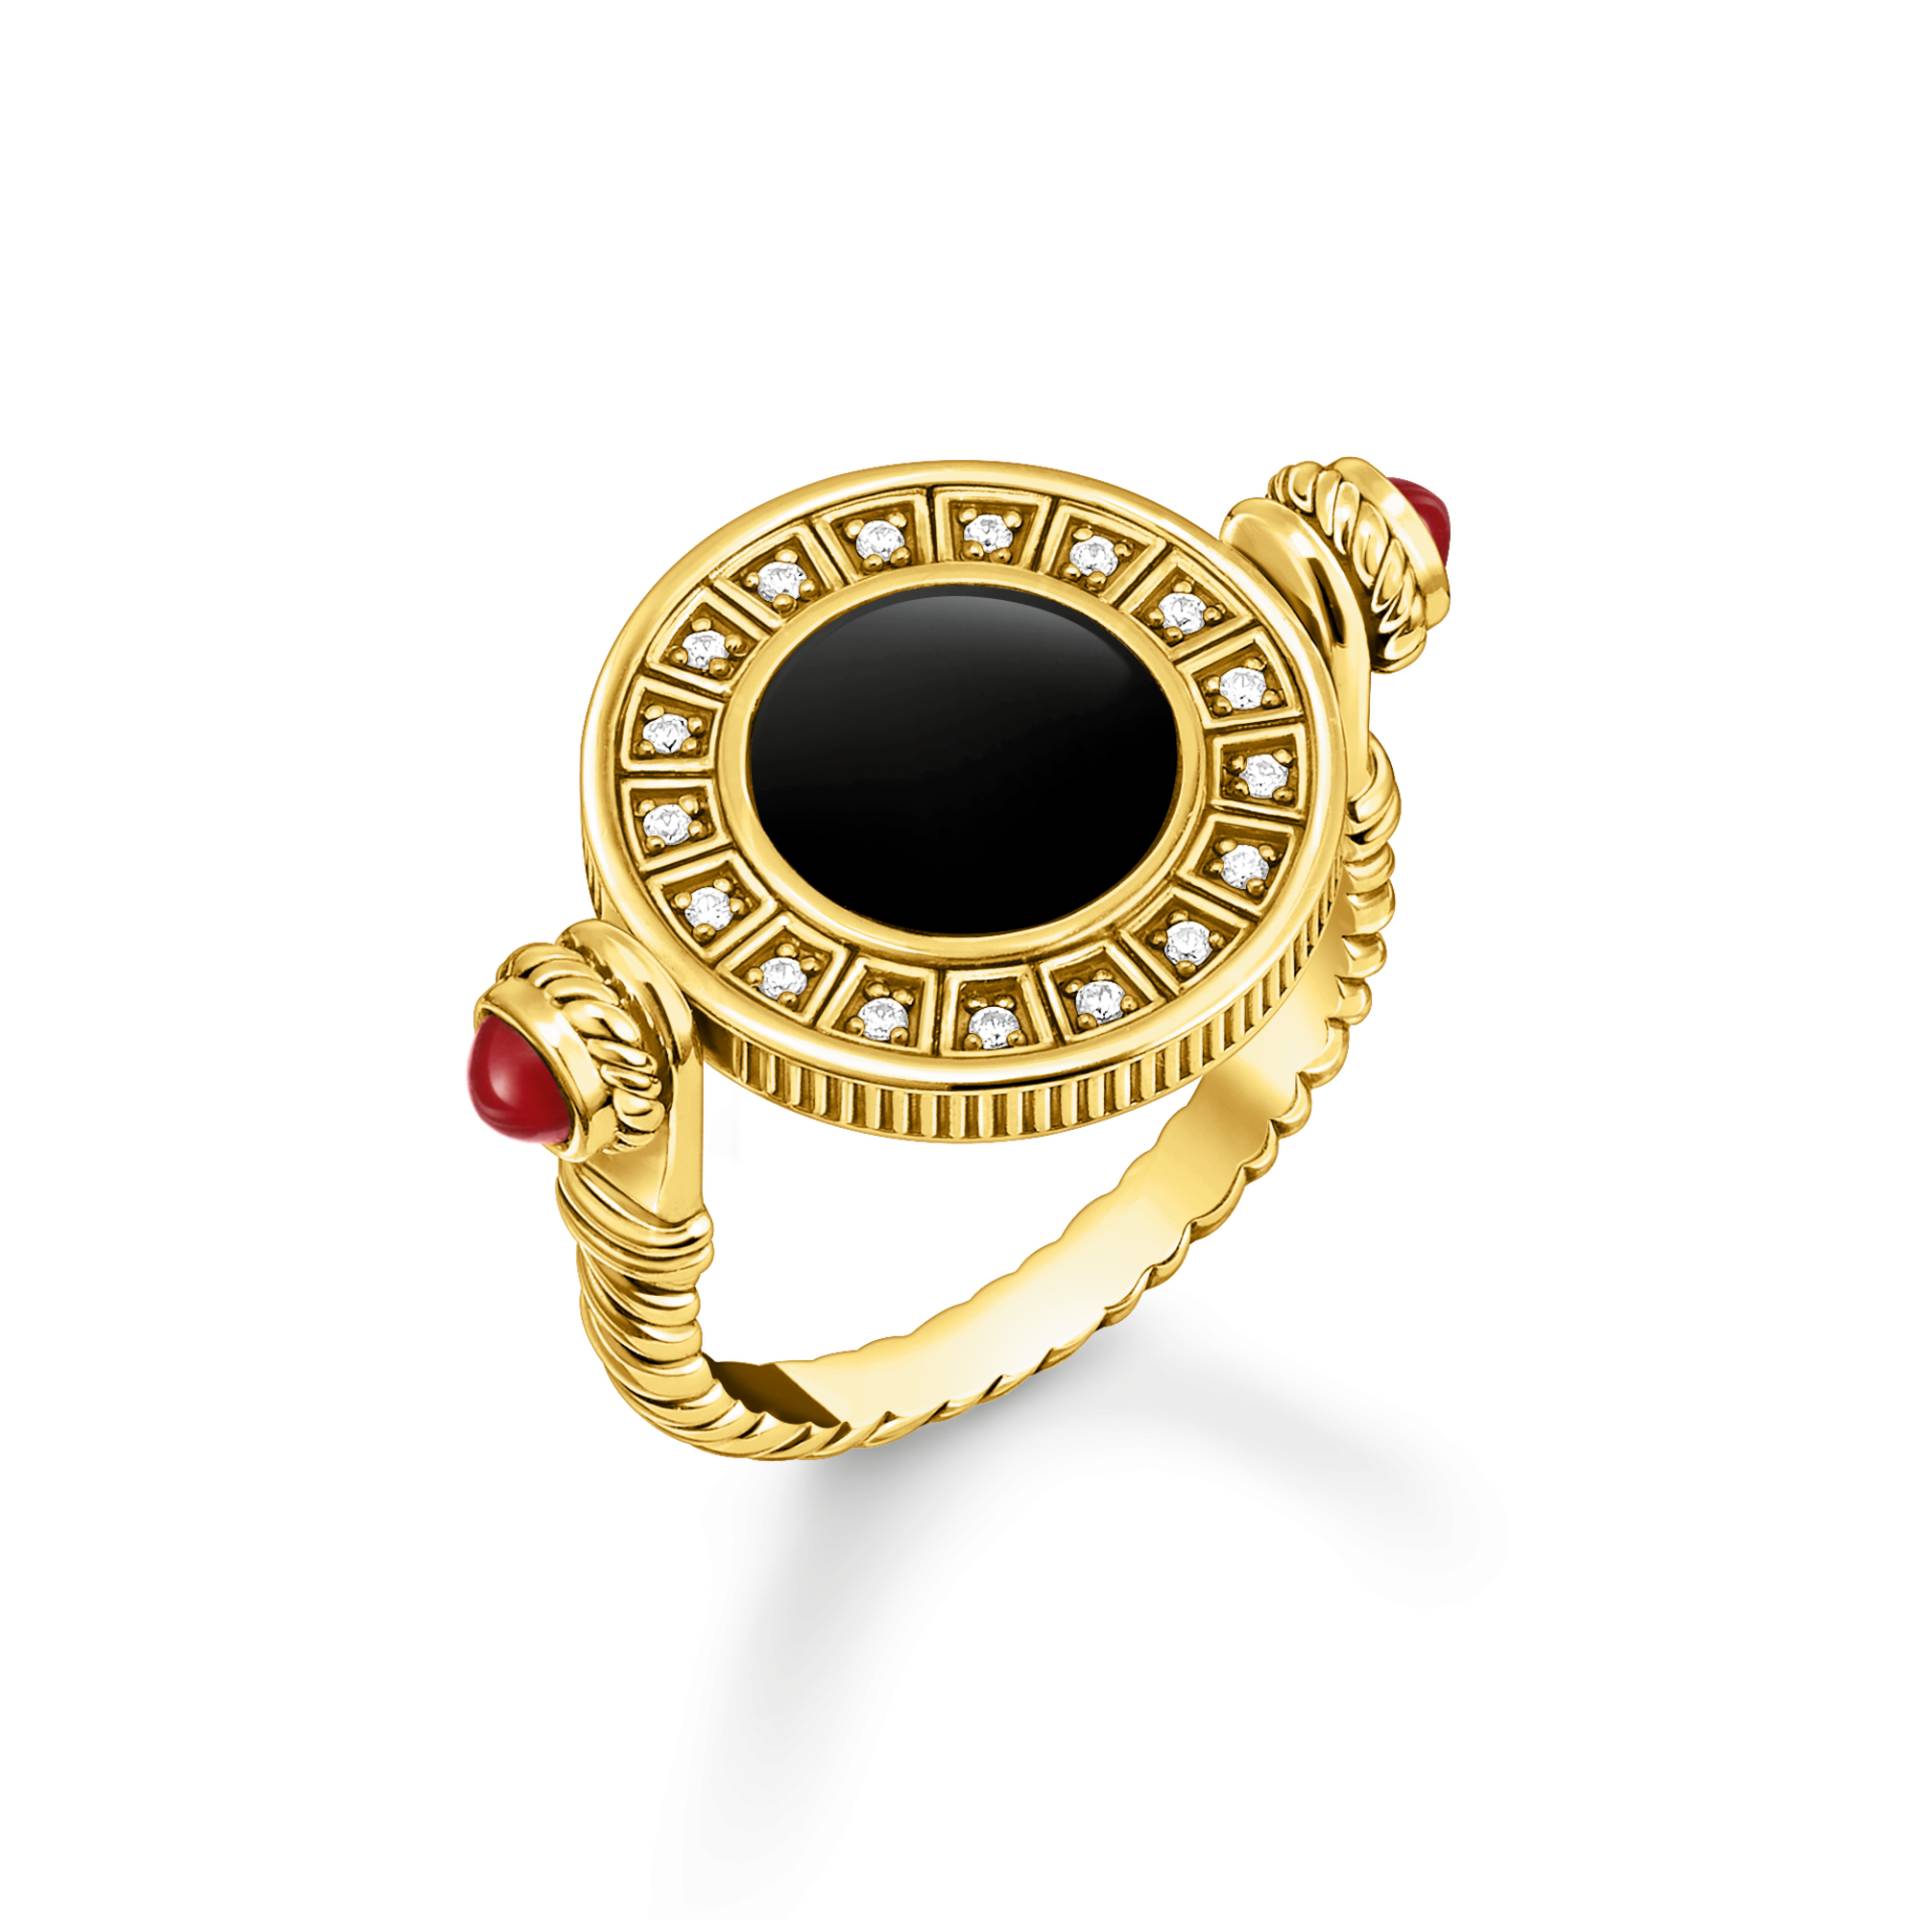 Thomas Sabo Ring drehbar mit schwarzem Onyx und weißen Steinen vergoldet mehrfarbig TR2427-522-7-54 von Thomas Sabo